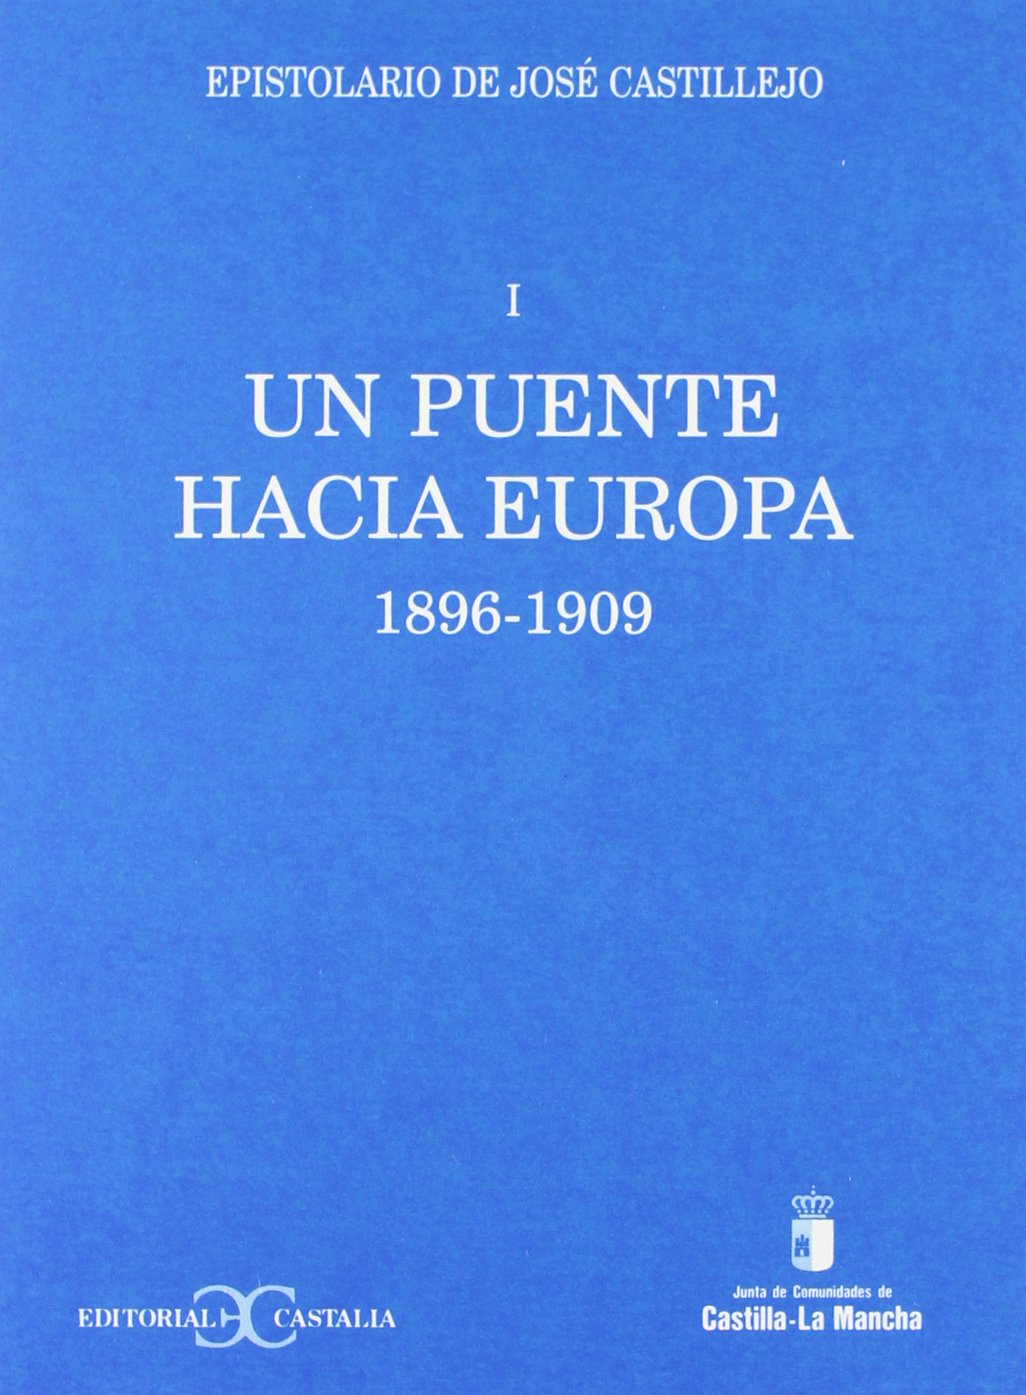 Imagen de portada del libro Un puente hacia Europa. Epistolario de José Castillejo, I                       .